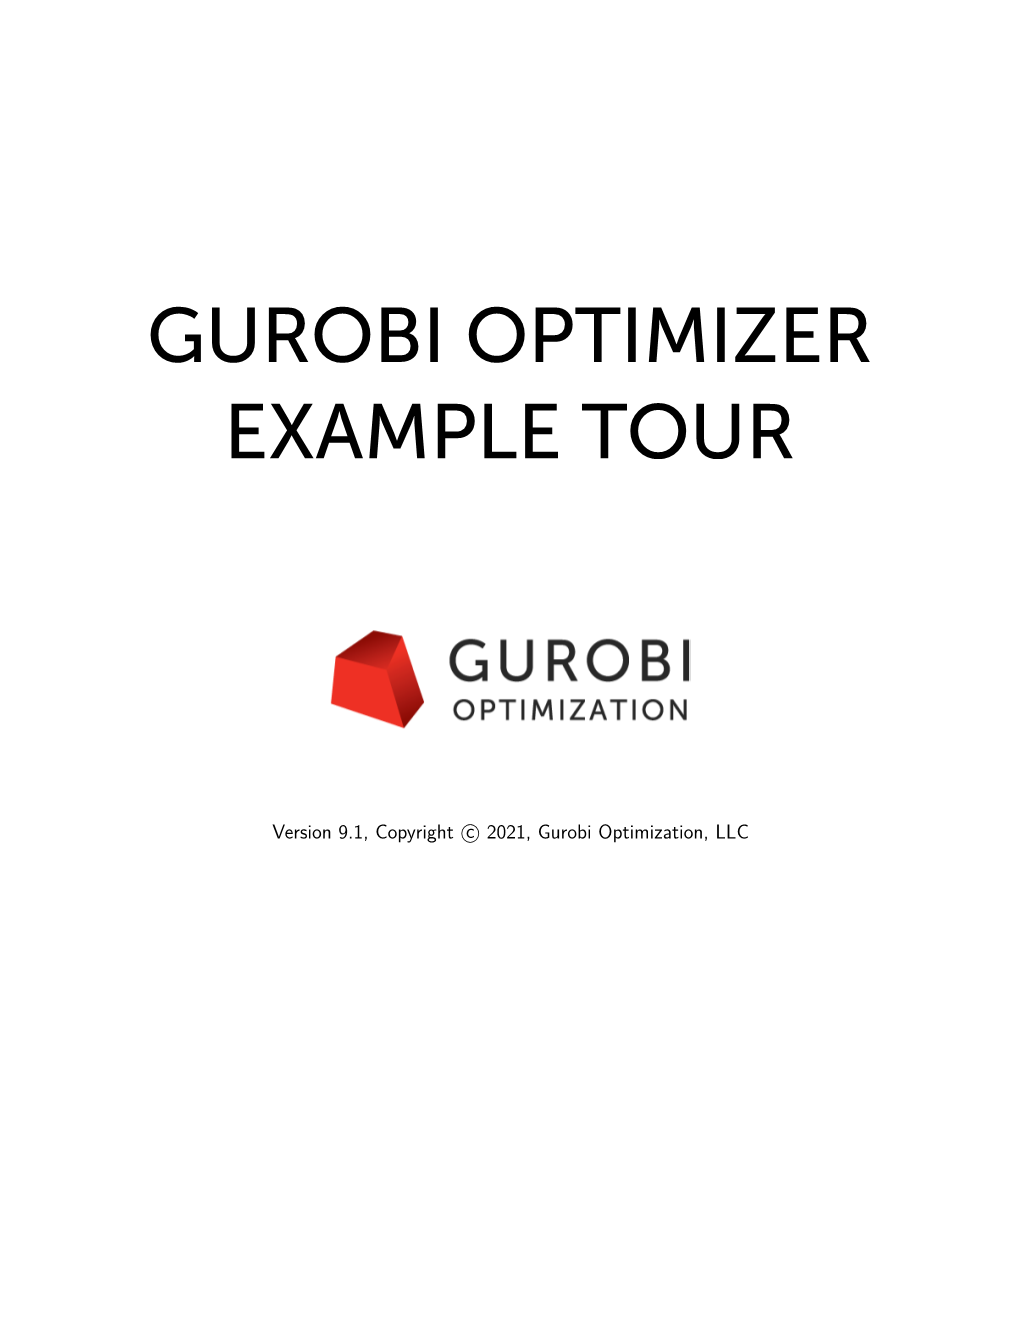 Gurobi Optimizer Example Tour